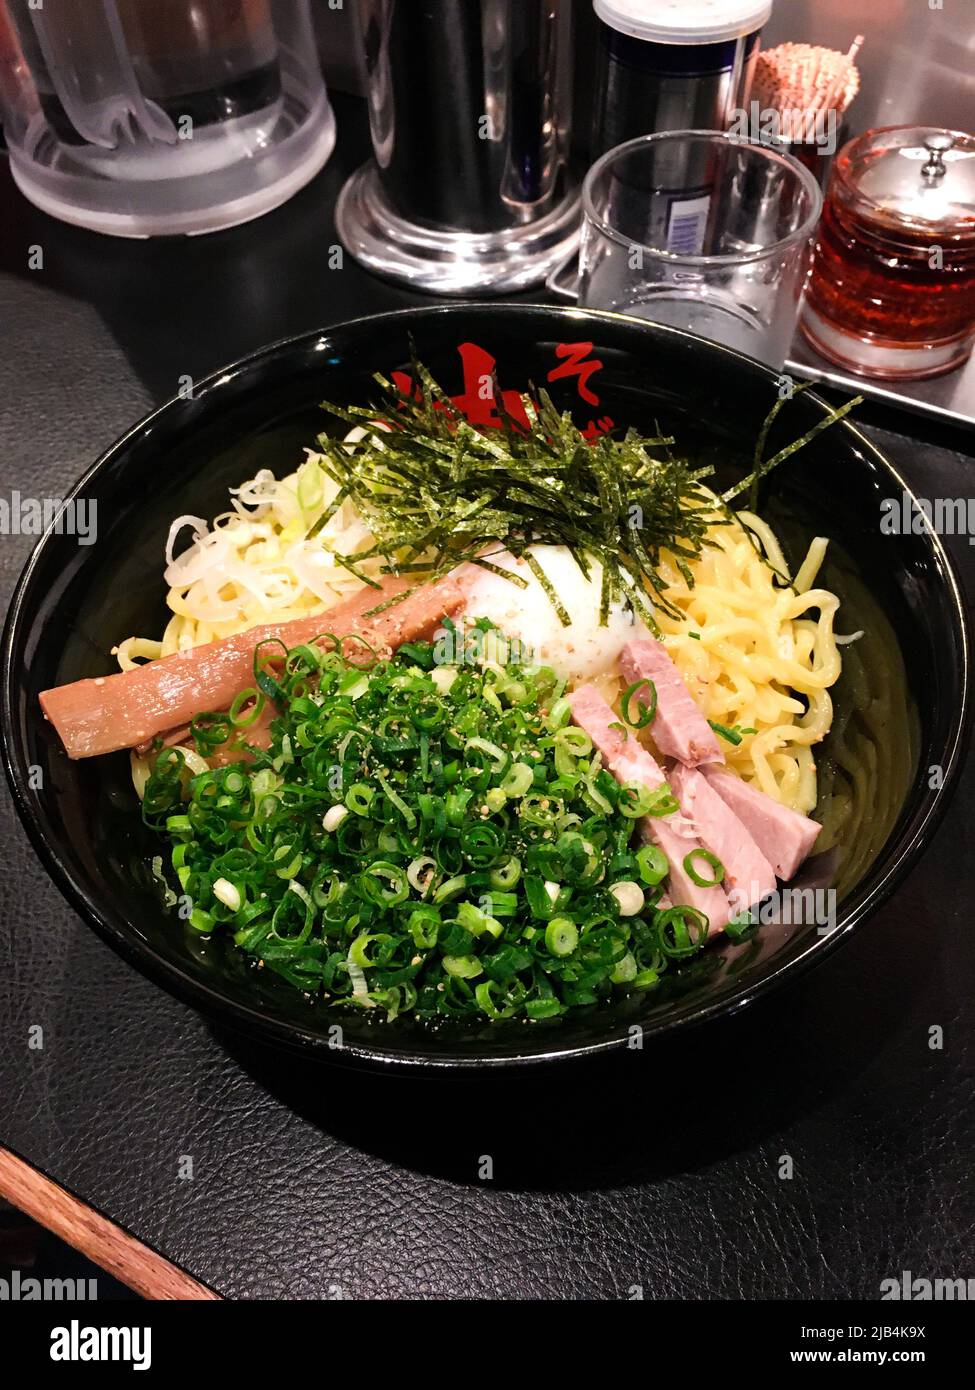 El Abura Soba (fideos de aceite) japonés, un tipo de ramen japonés con cebollas verdes picadas, jamón, menma, nori y huevo hervido (Hanujku) en la mesa del restaurante Foto de stock